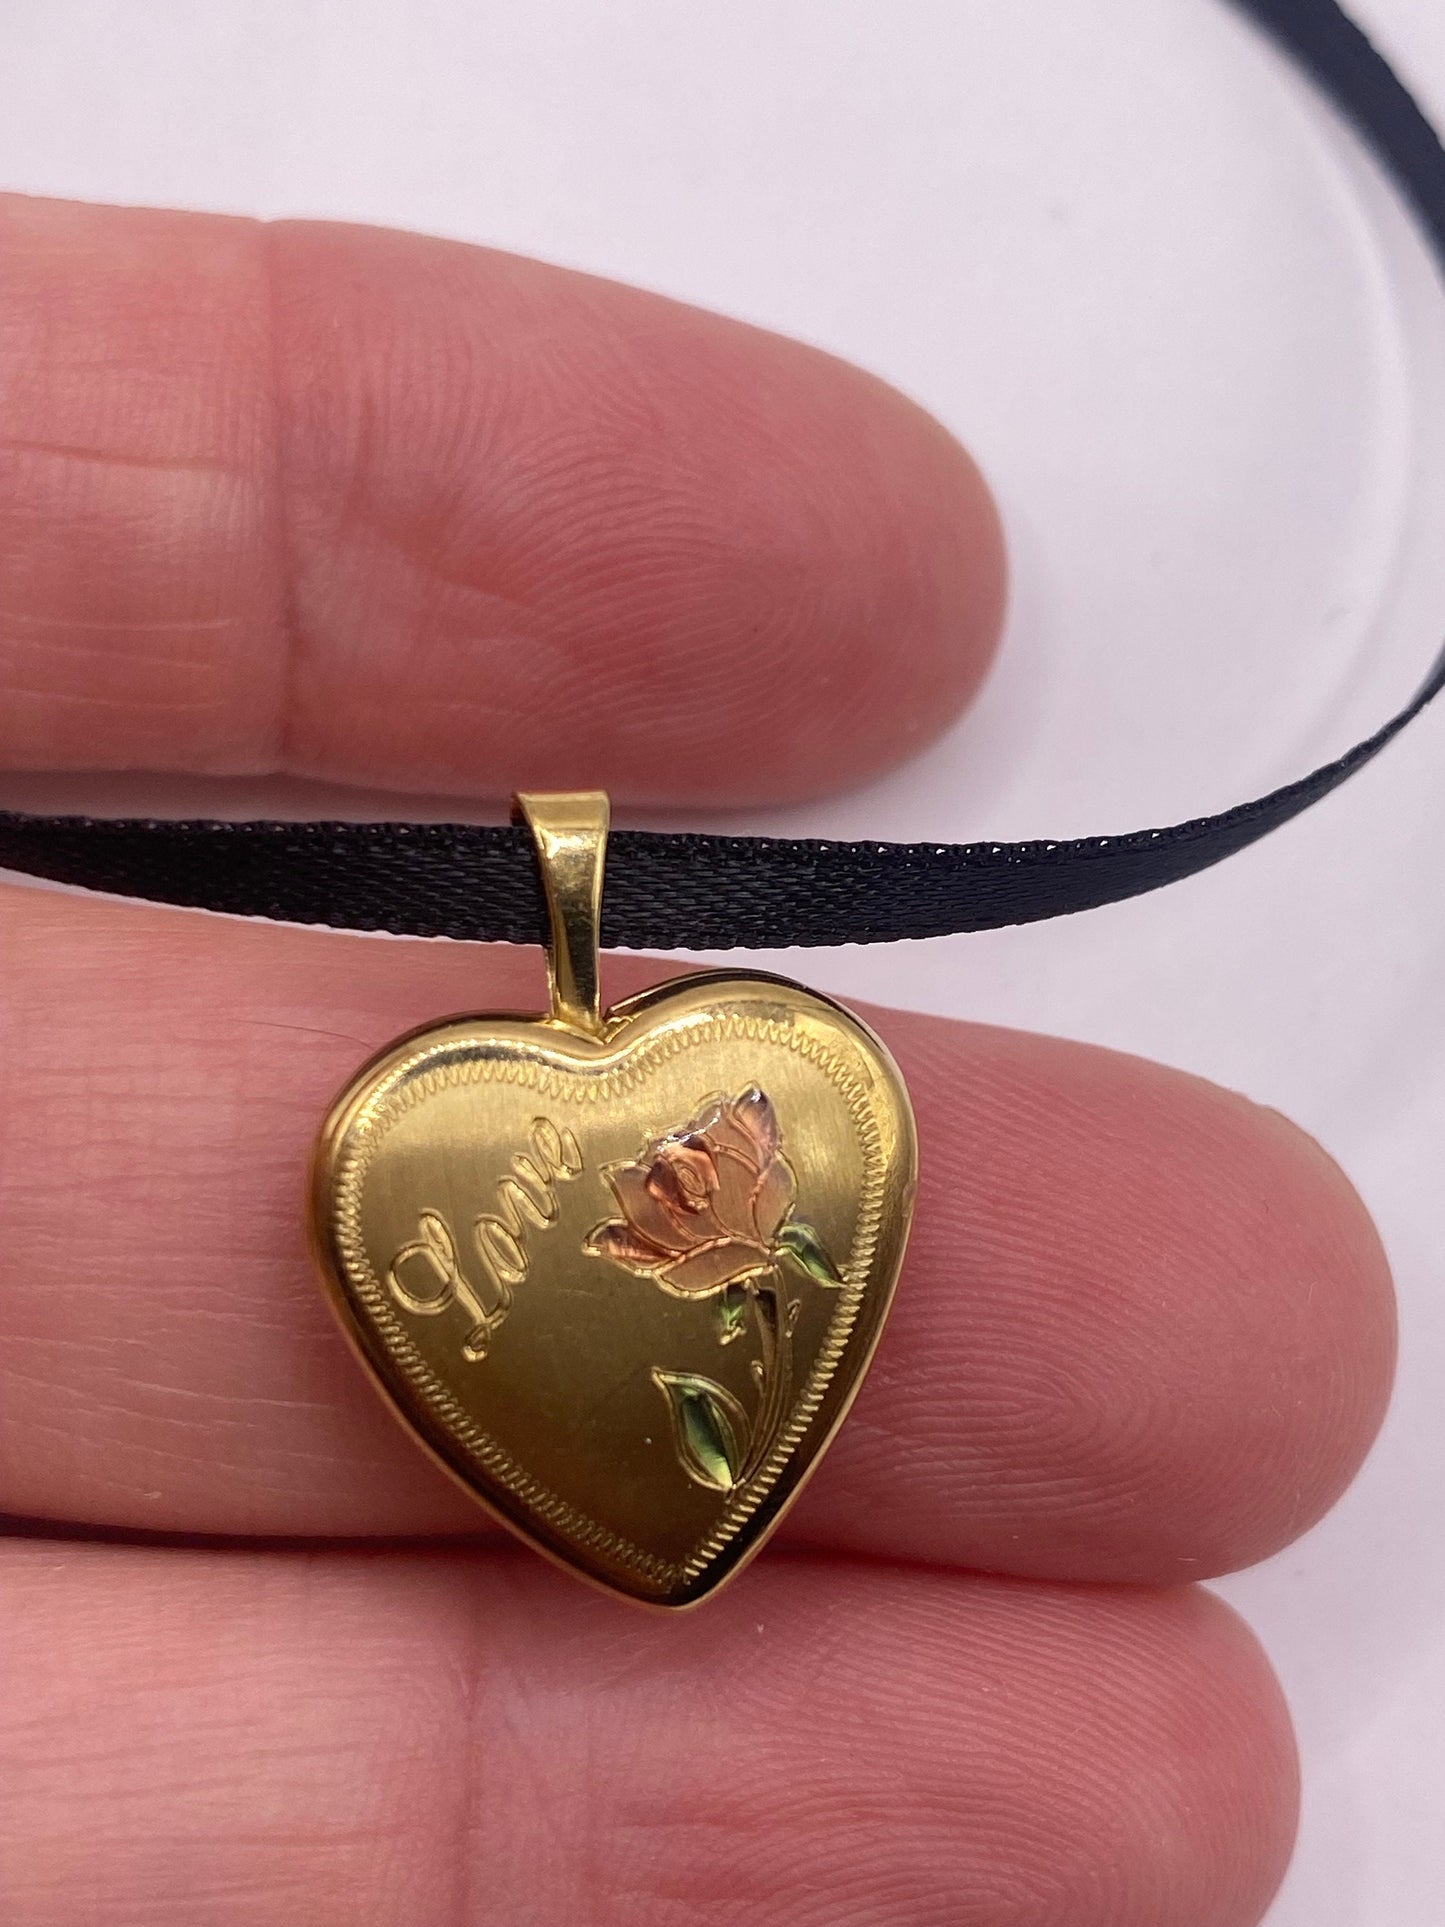 Vintage Heart Locket Choker Gold Filled Necklace